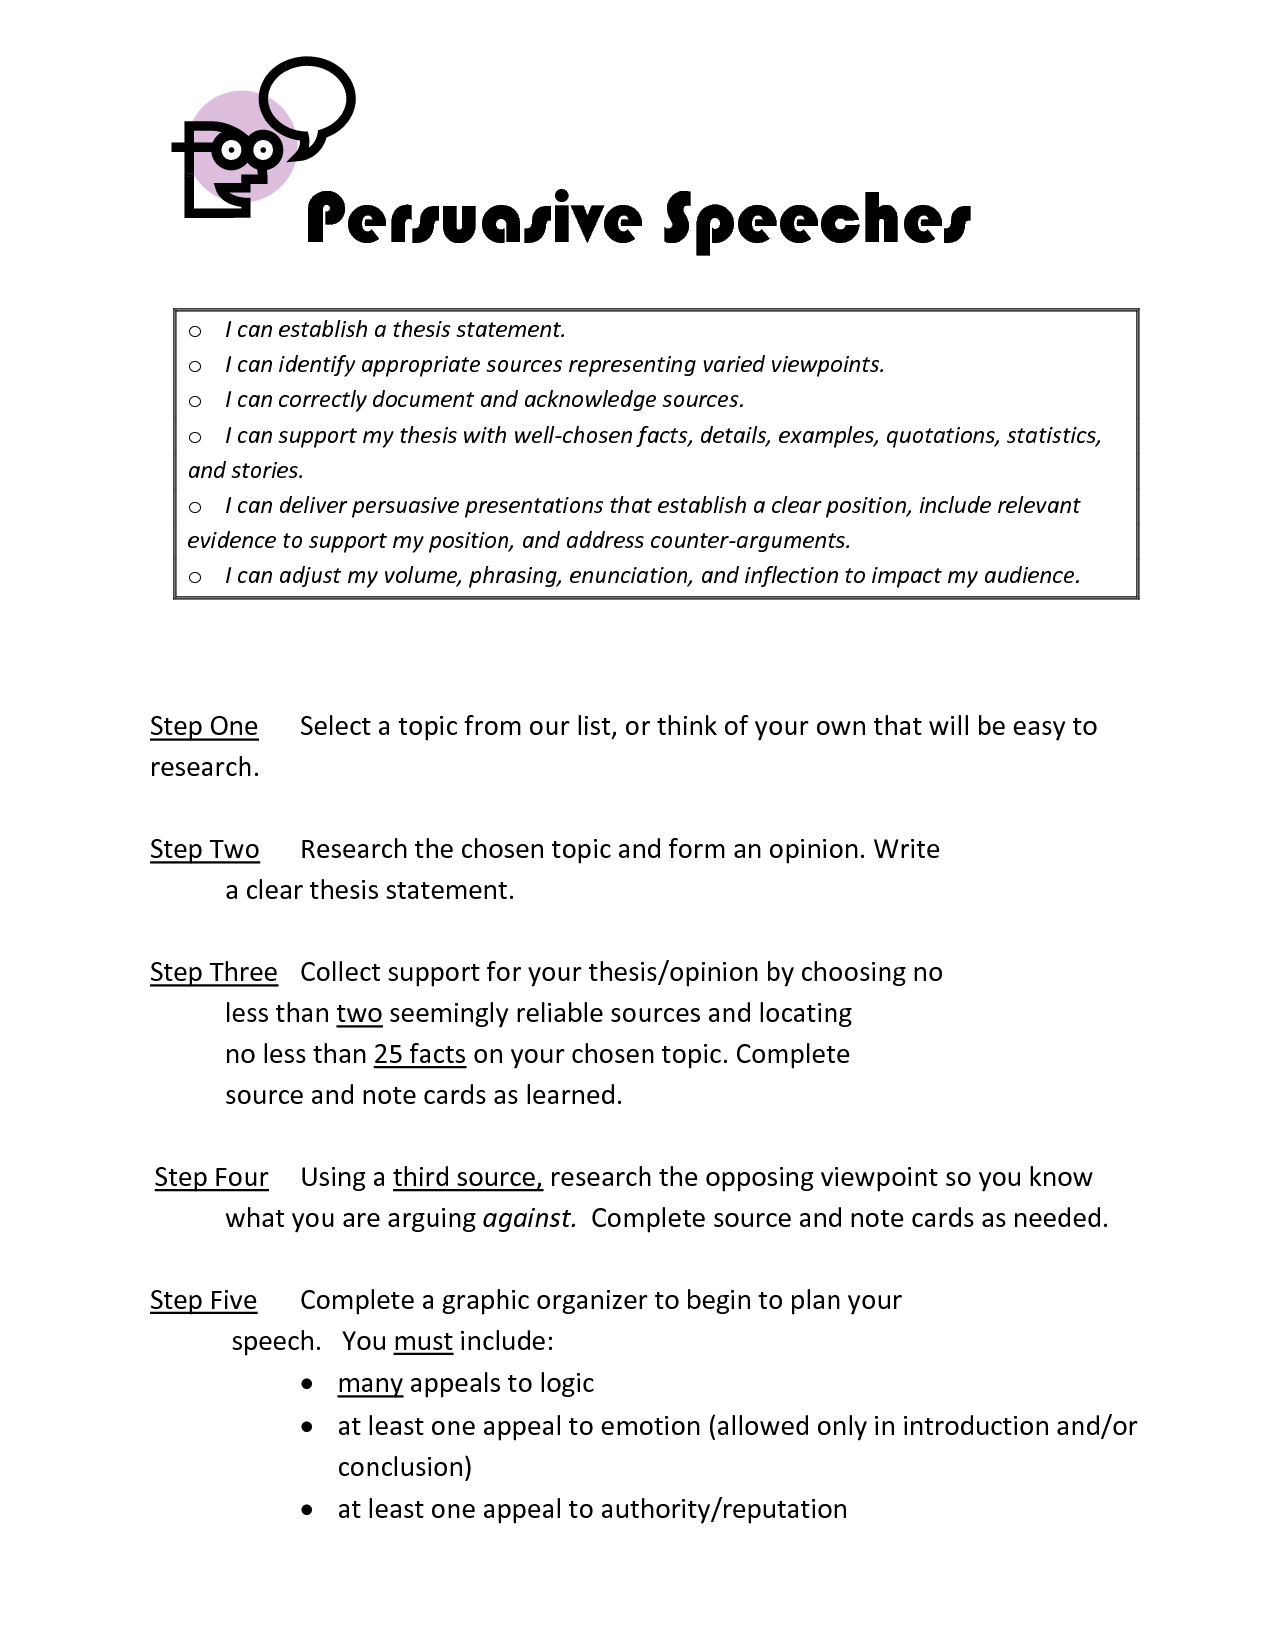 How to write a persuasive speech